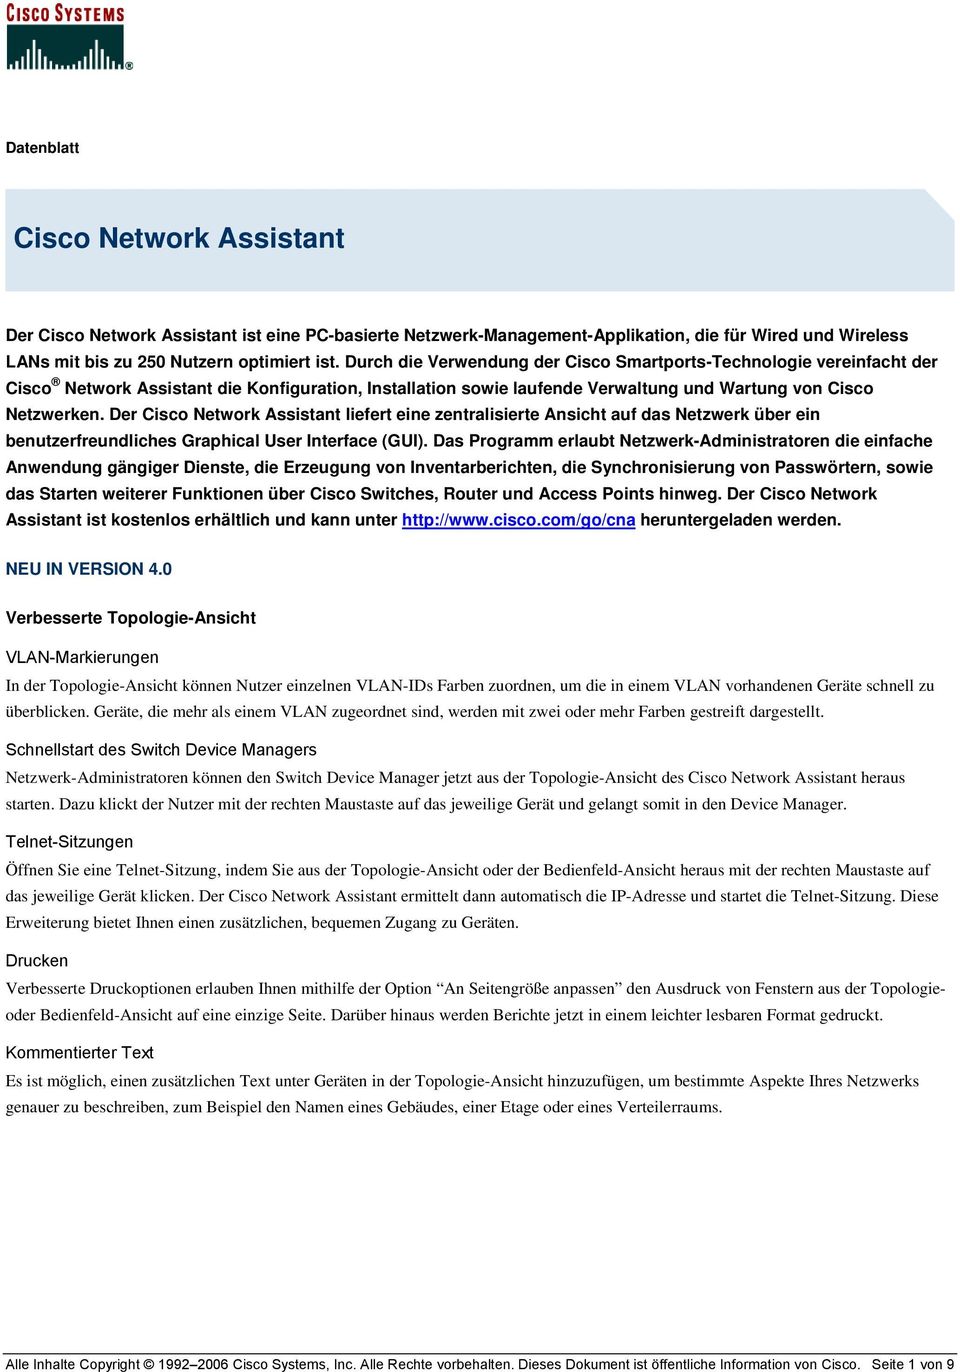 Der Cisco Network Assistant liefert eine zentralisierte Ansicht auf das Netzwerk über ein benutzerfreundliches Graphical User Interface (GUI).